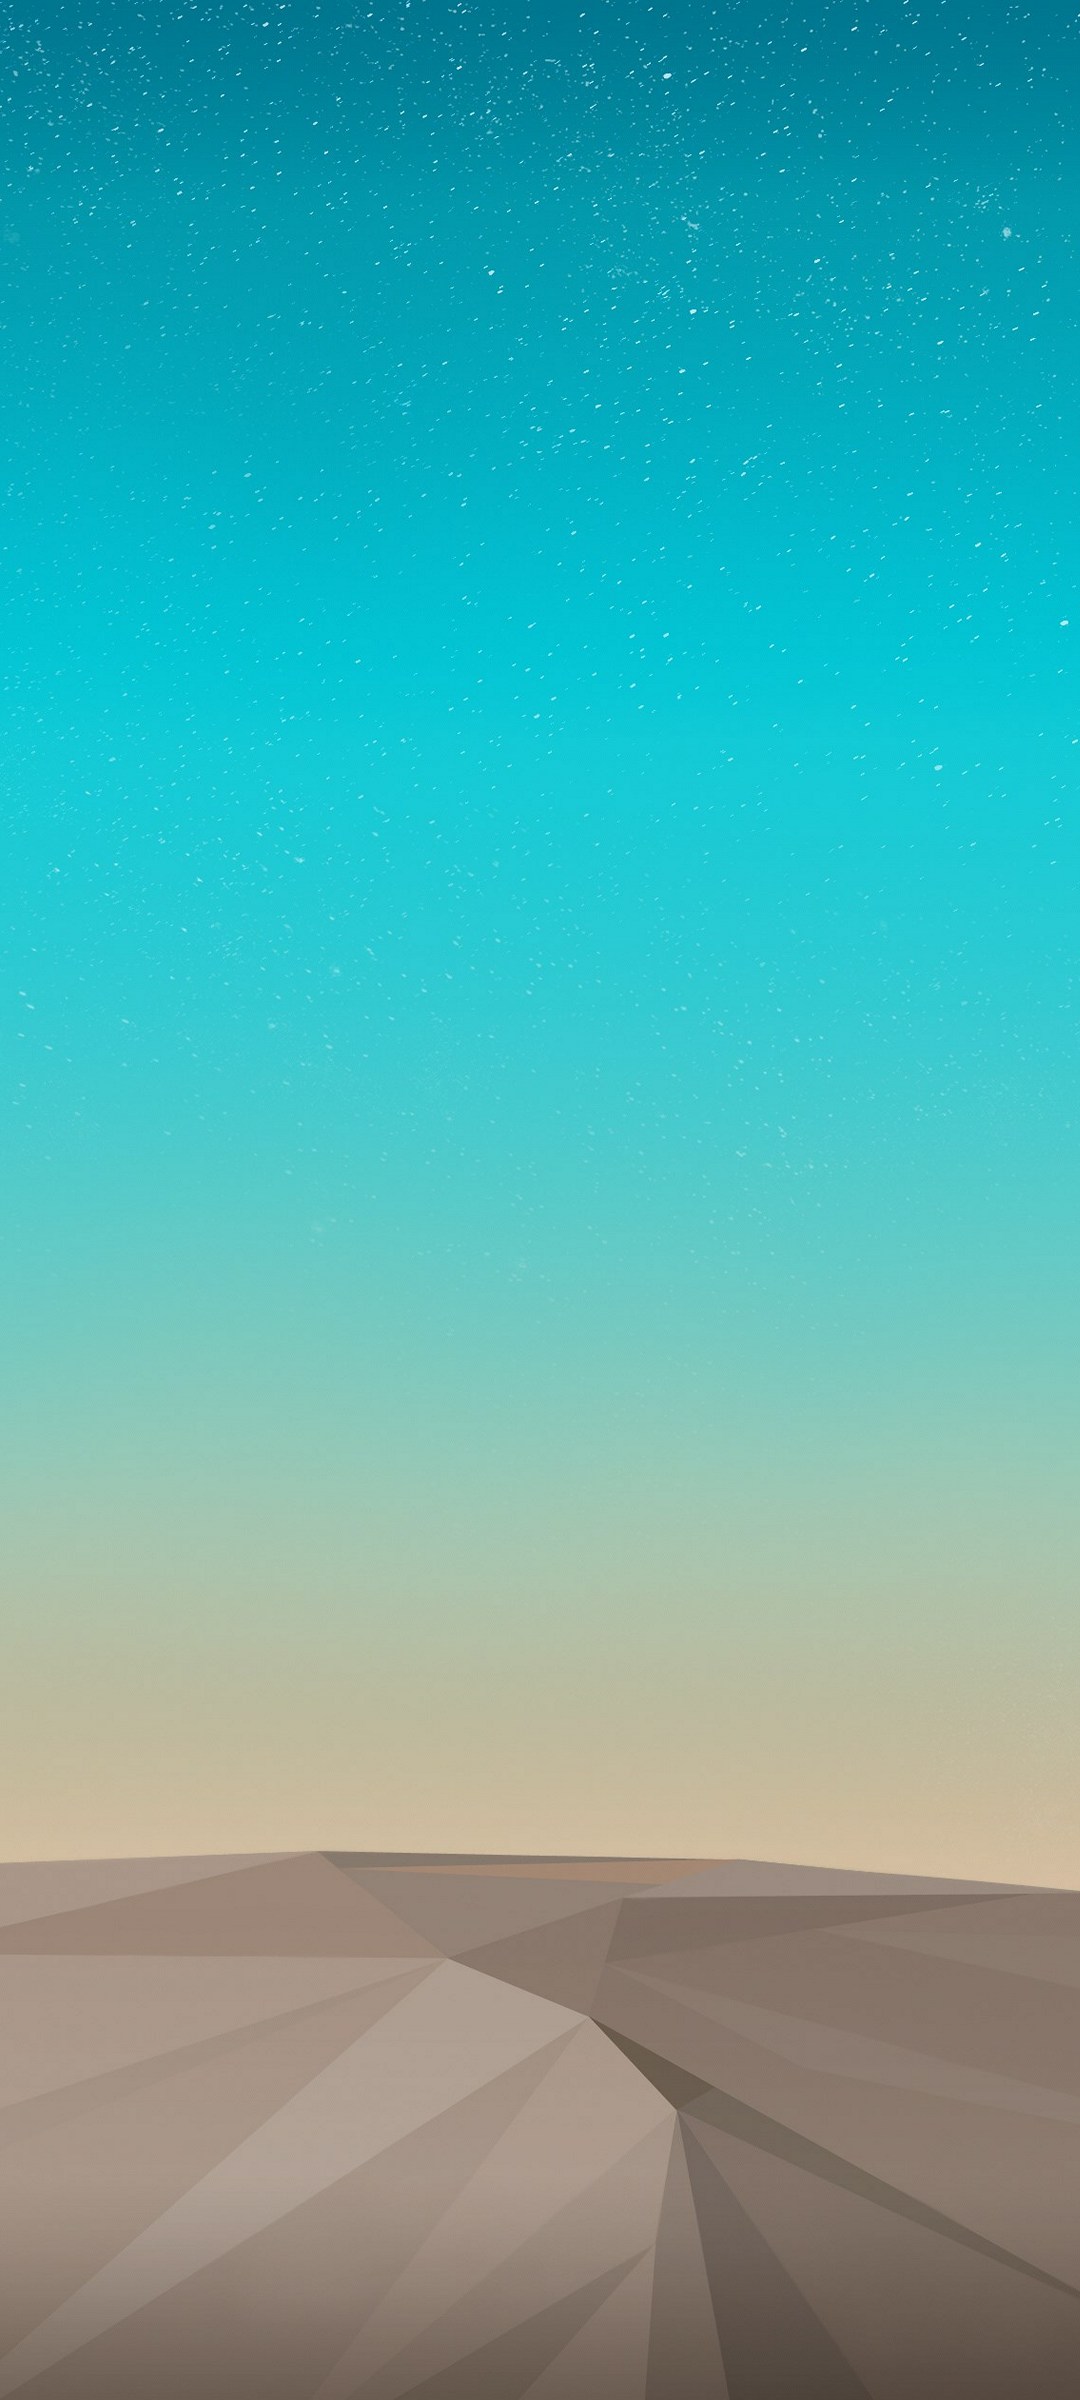 水色の空とポリゴンの砂漠 Galaxy S21 5g Androidスマホ壁紙 待ち受け スマラン